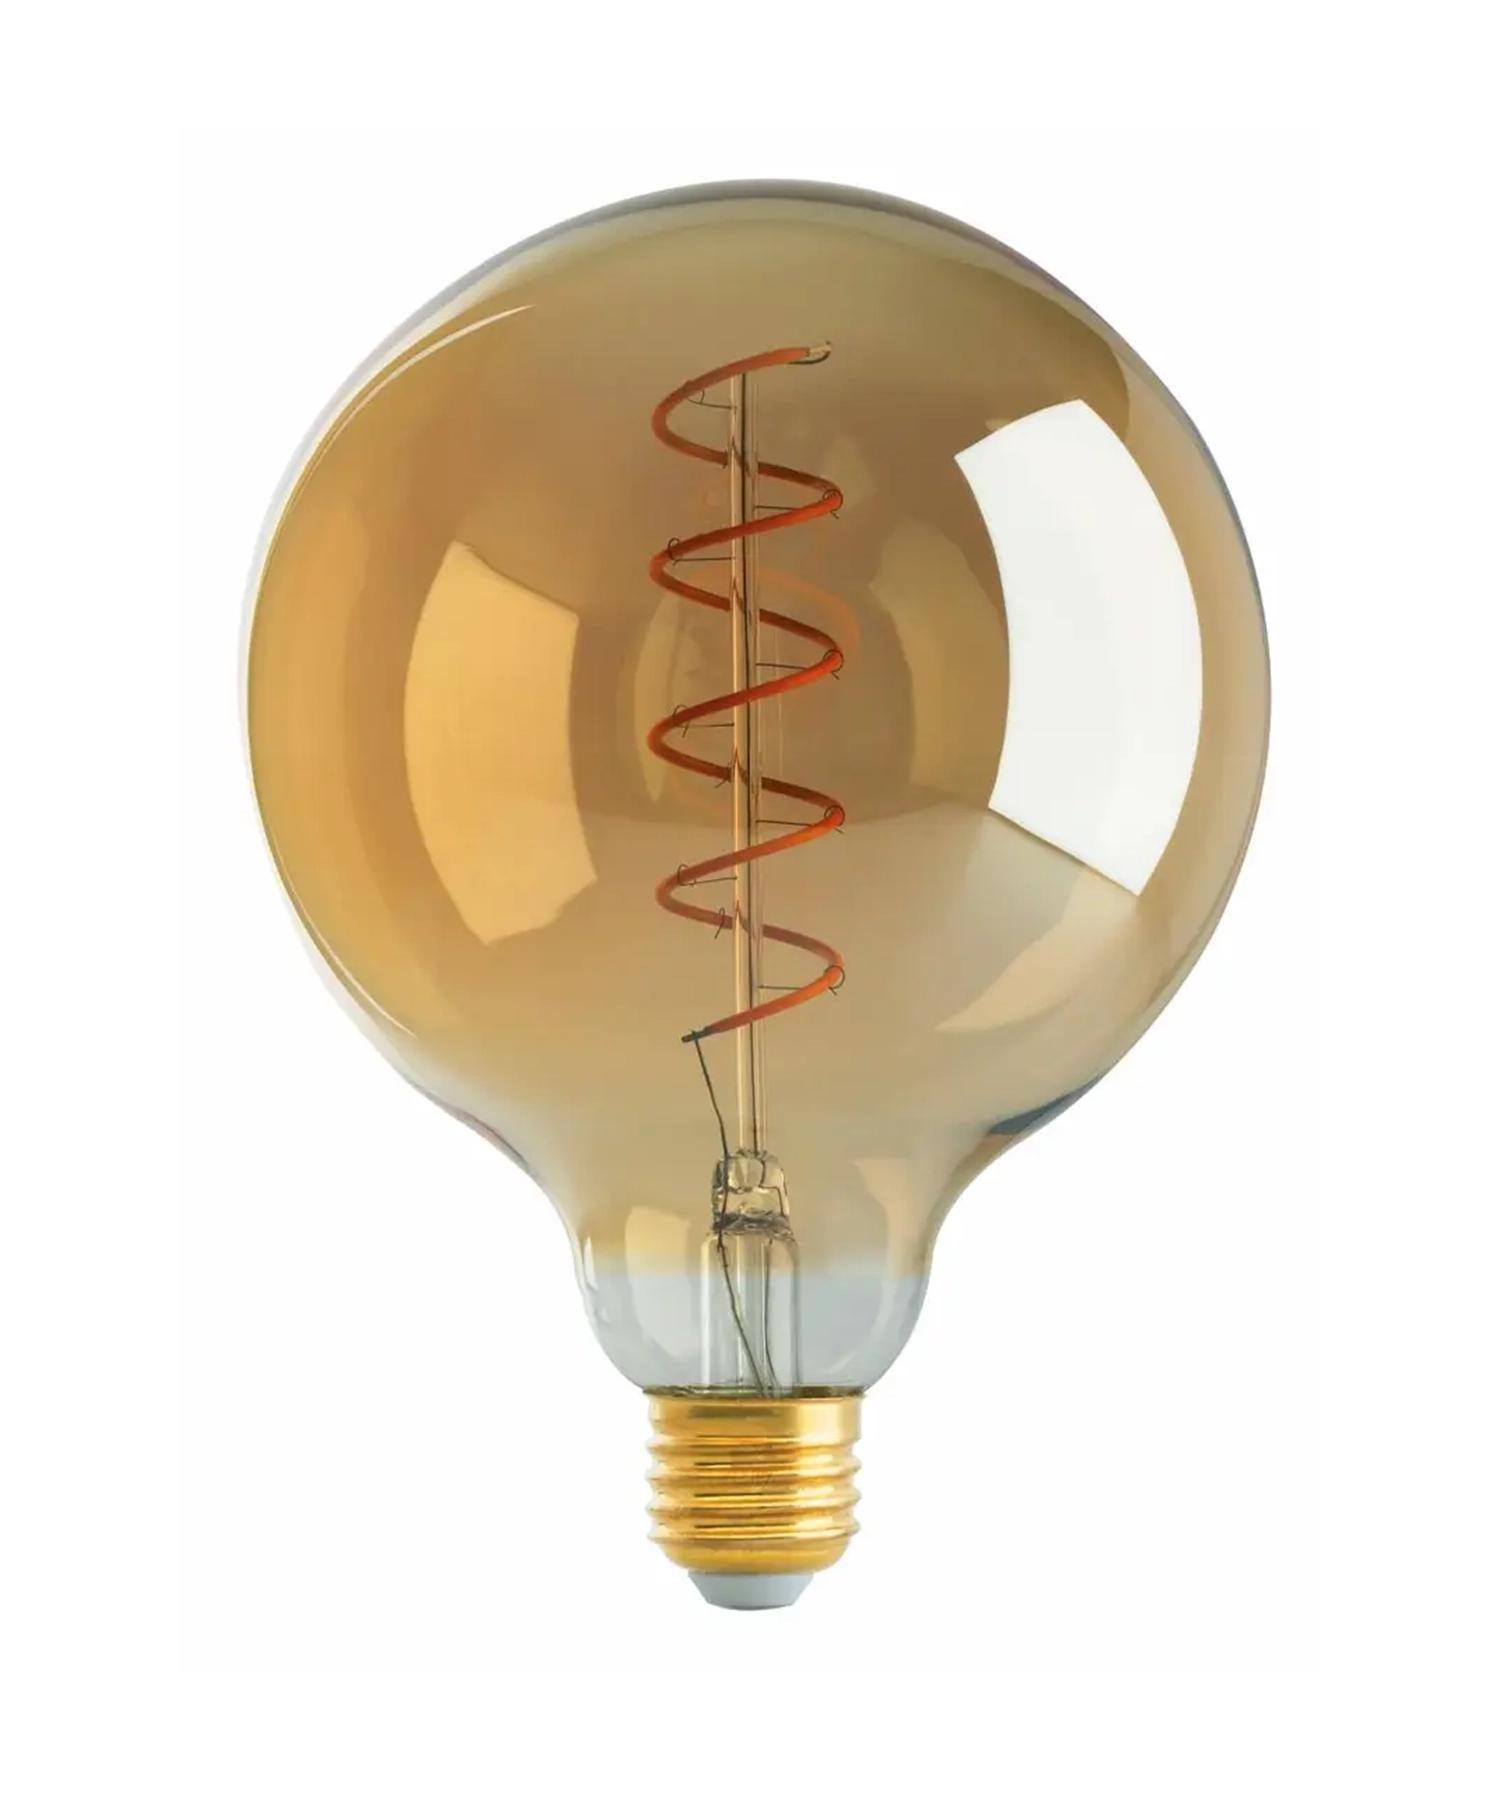 Vintage LED Light Bulbs - Bees Lighting